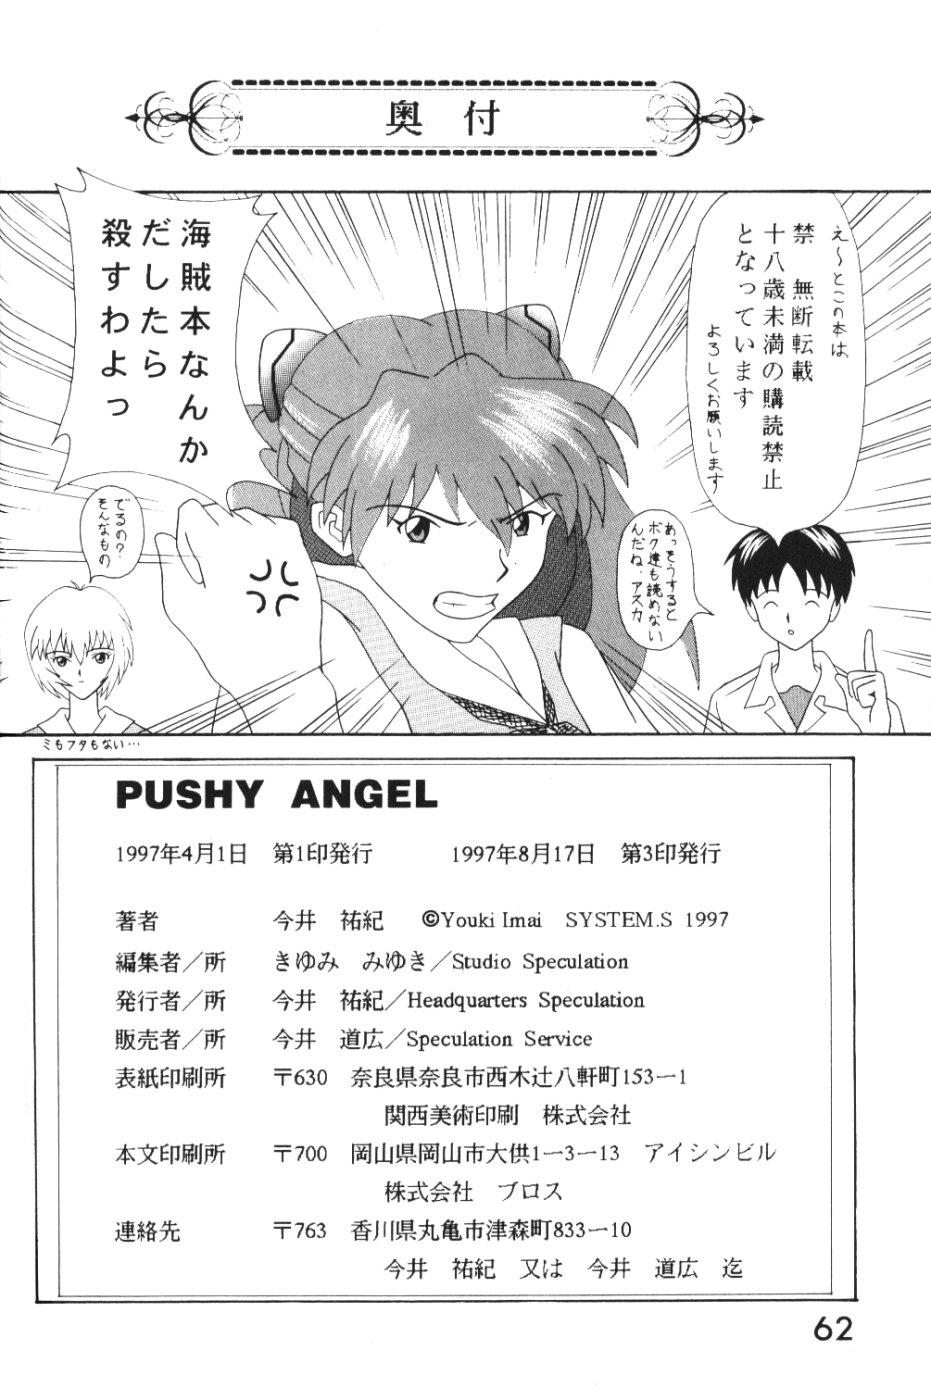 PUSHY ANGEL 60